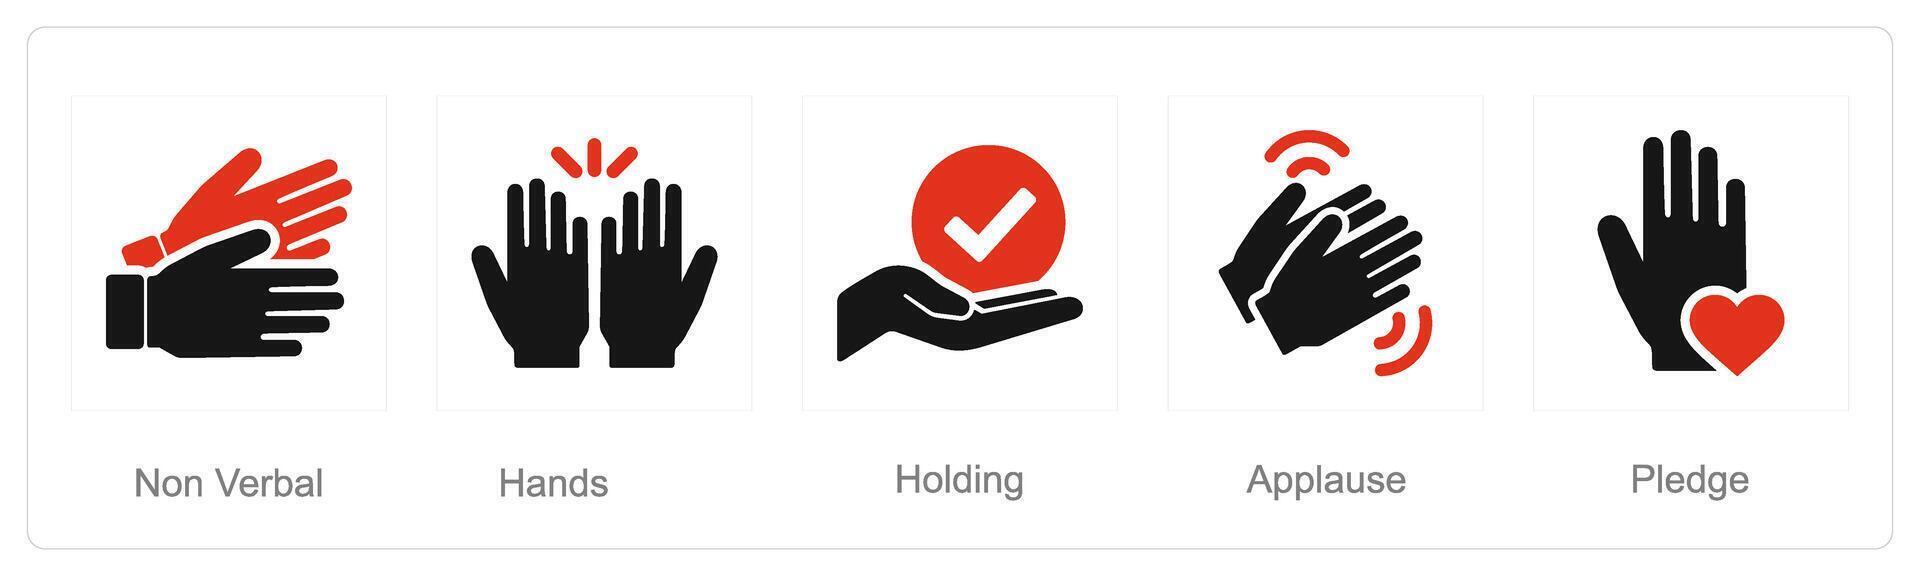 un conjunto de 5 5 manos íconos como no verbal, manos, participación vector